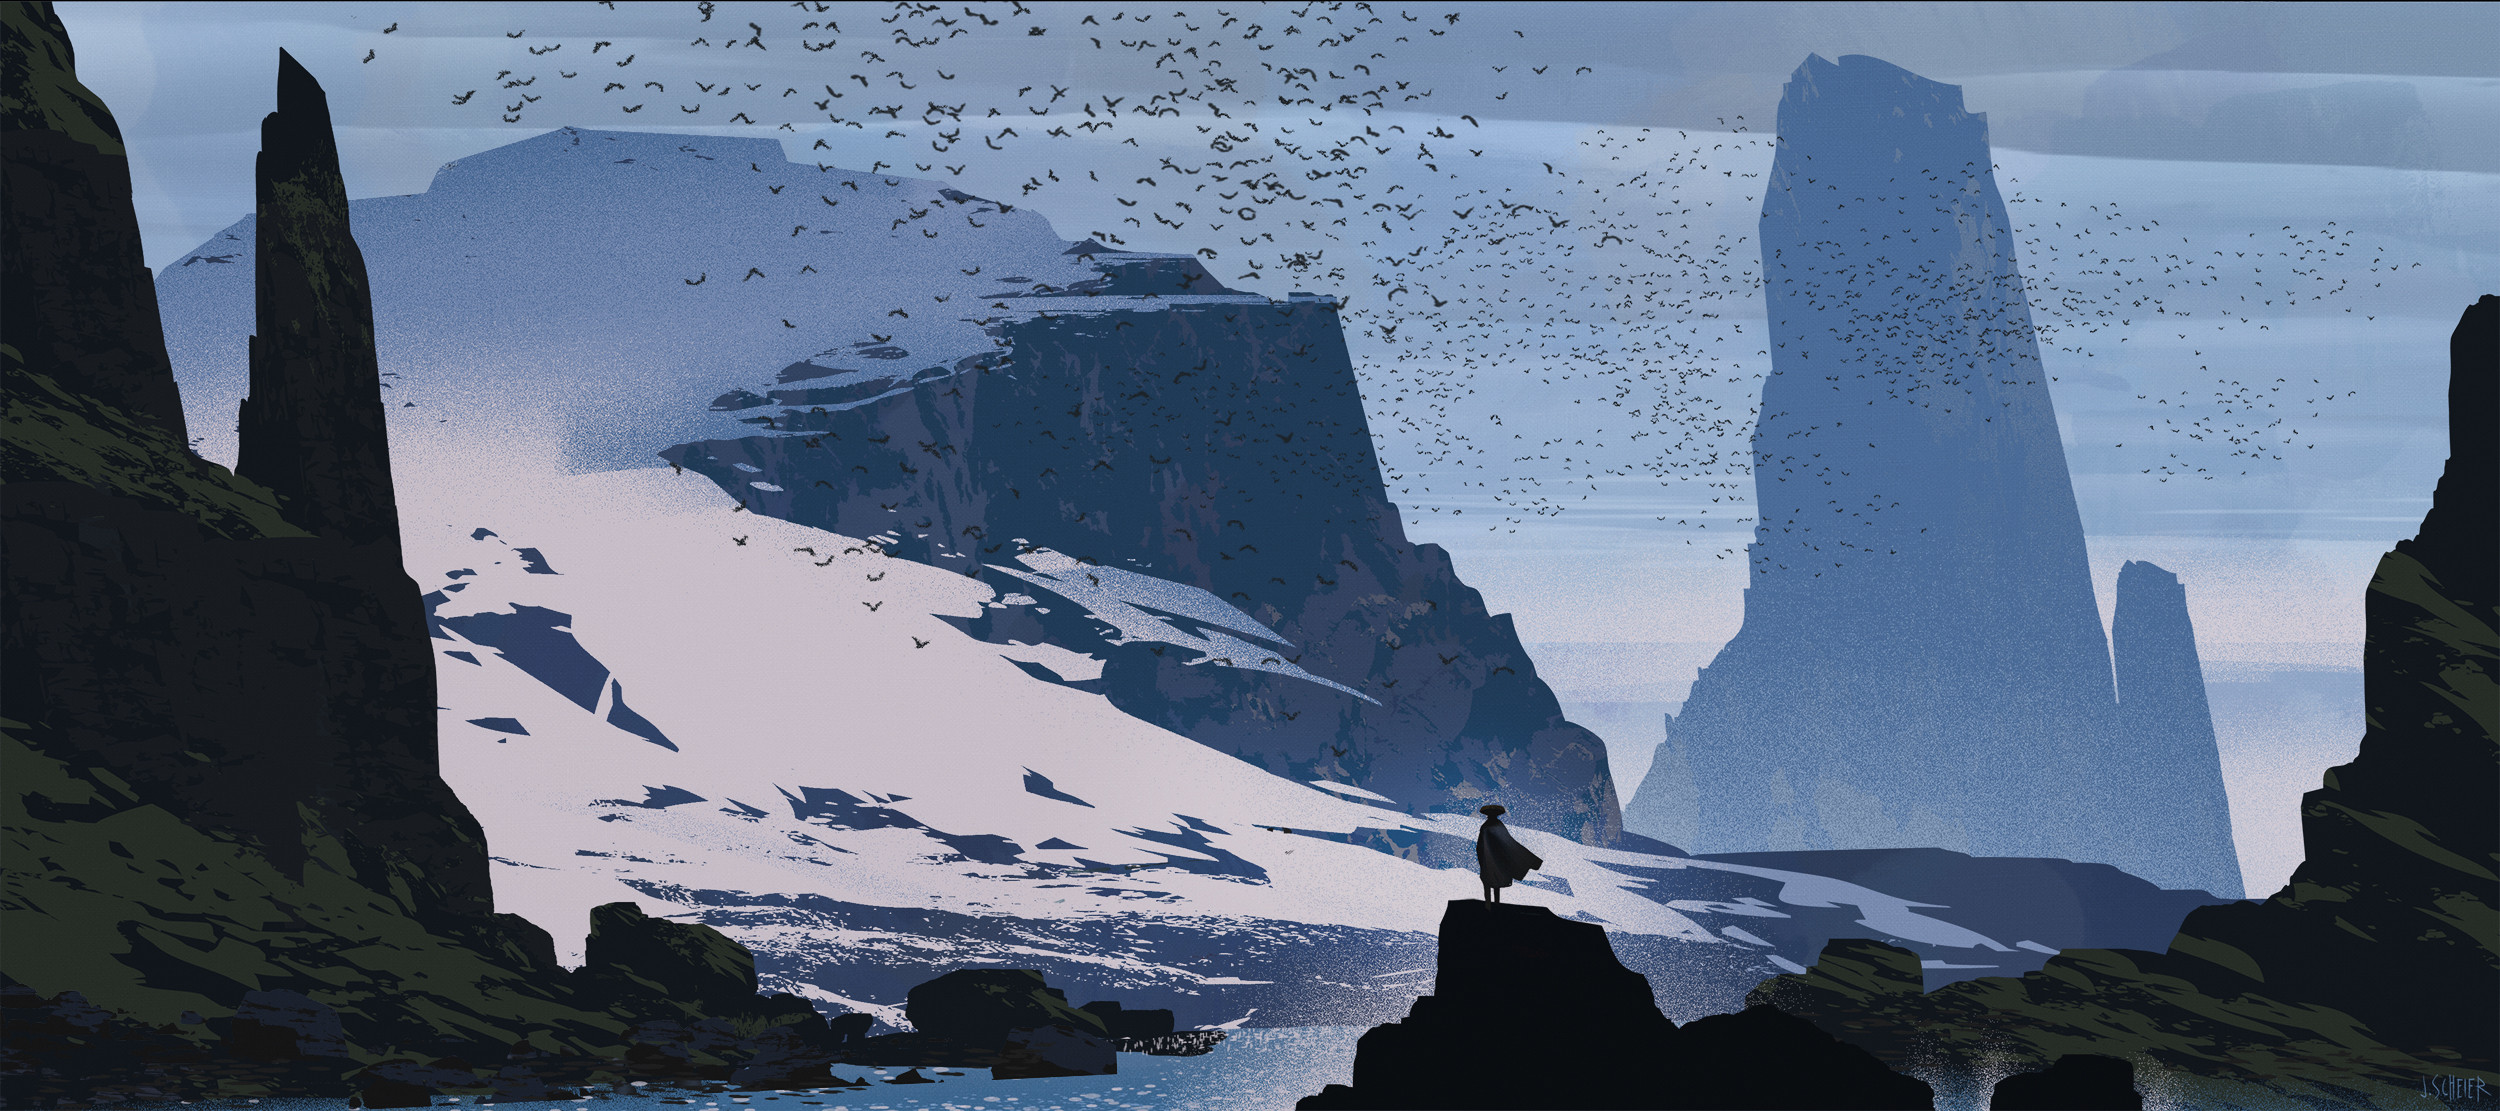 General 2500x1111 Jason Scheier digital art artwork illustration landscape nature mountains birds animals snow water